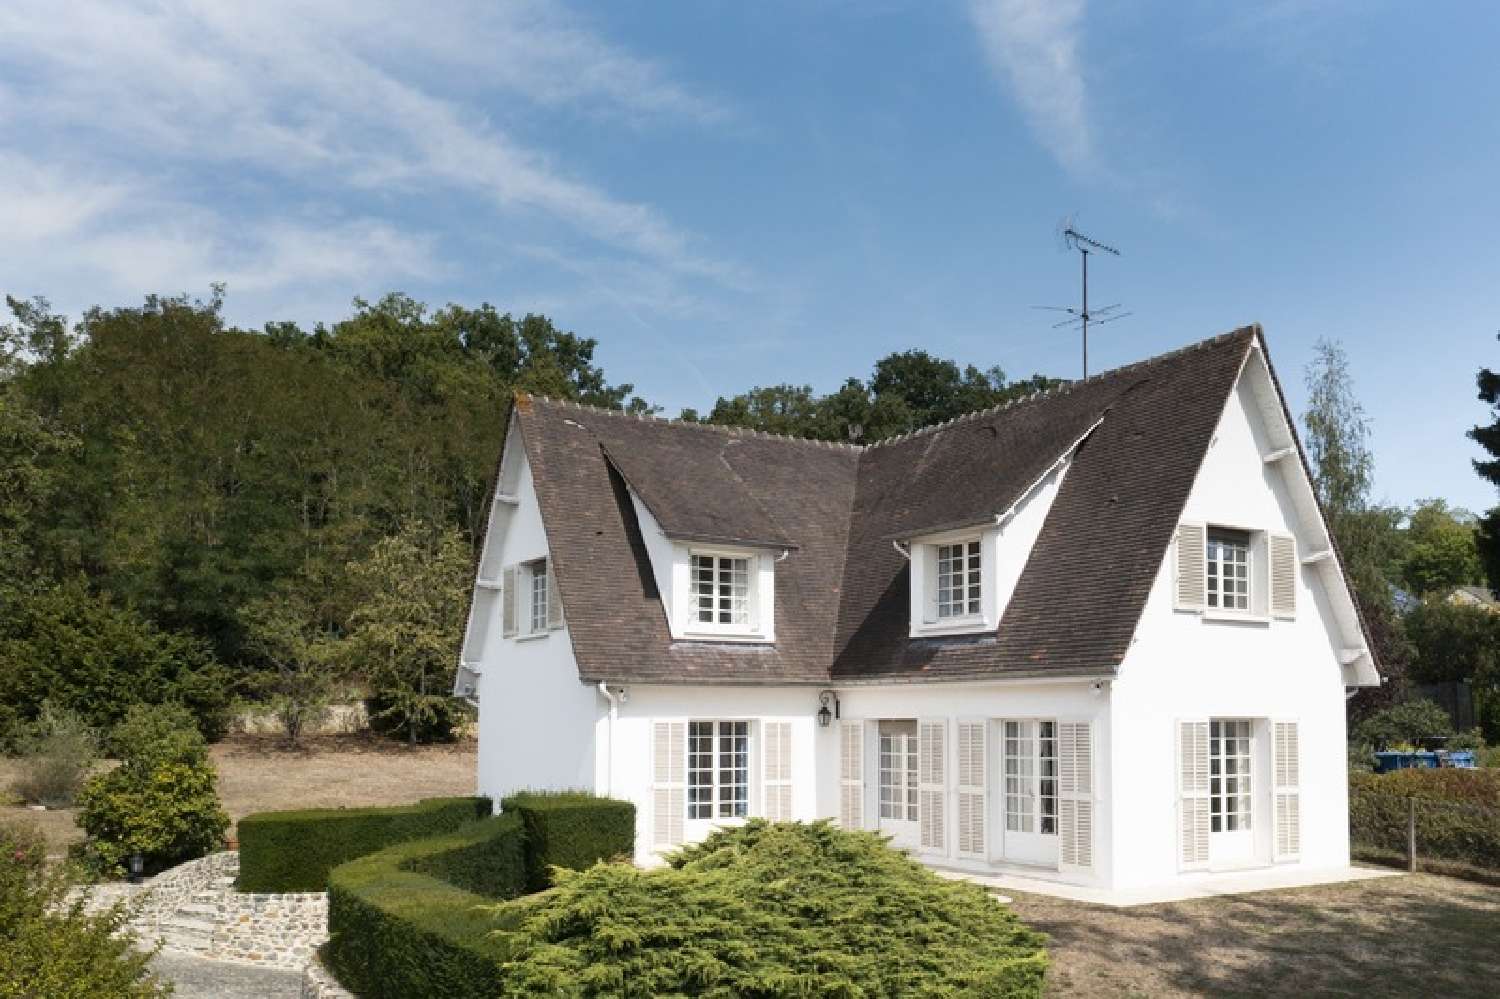  à vendre maison bourgeoise Neauphle-le-Château Yvelines 5